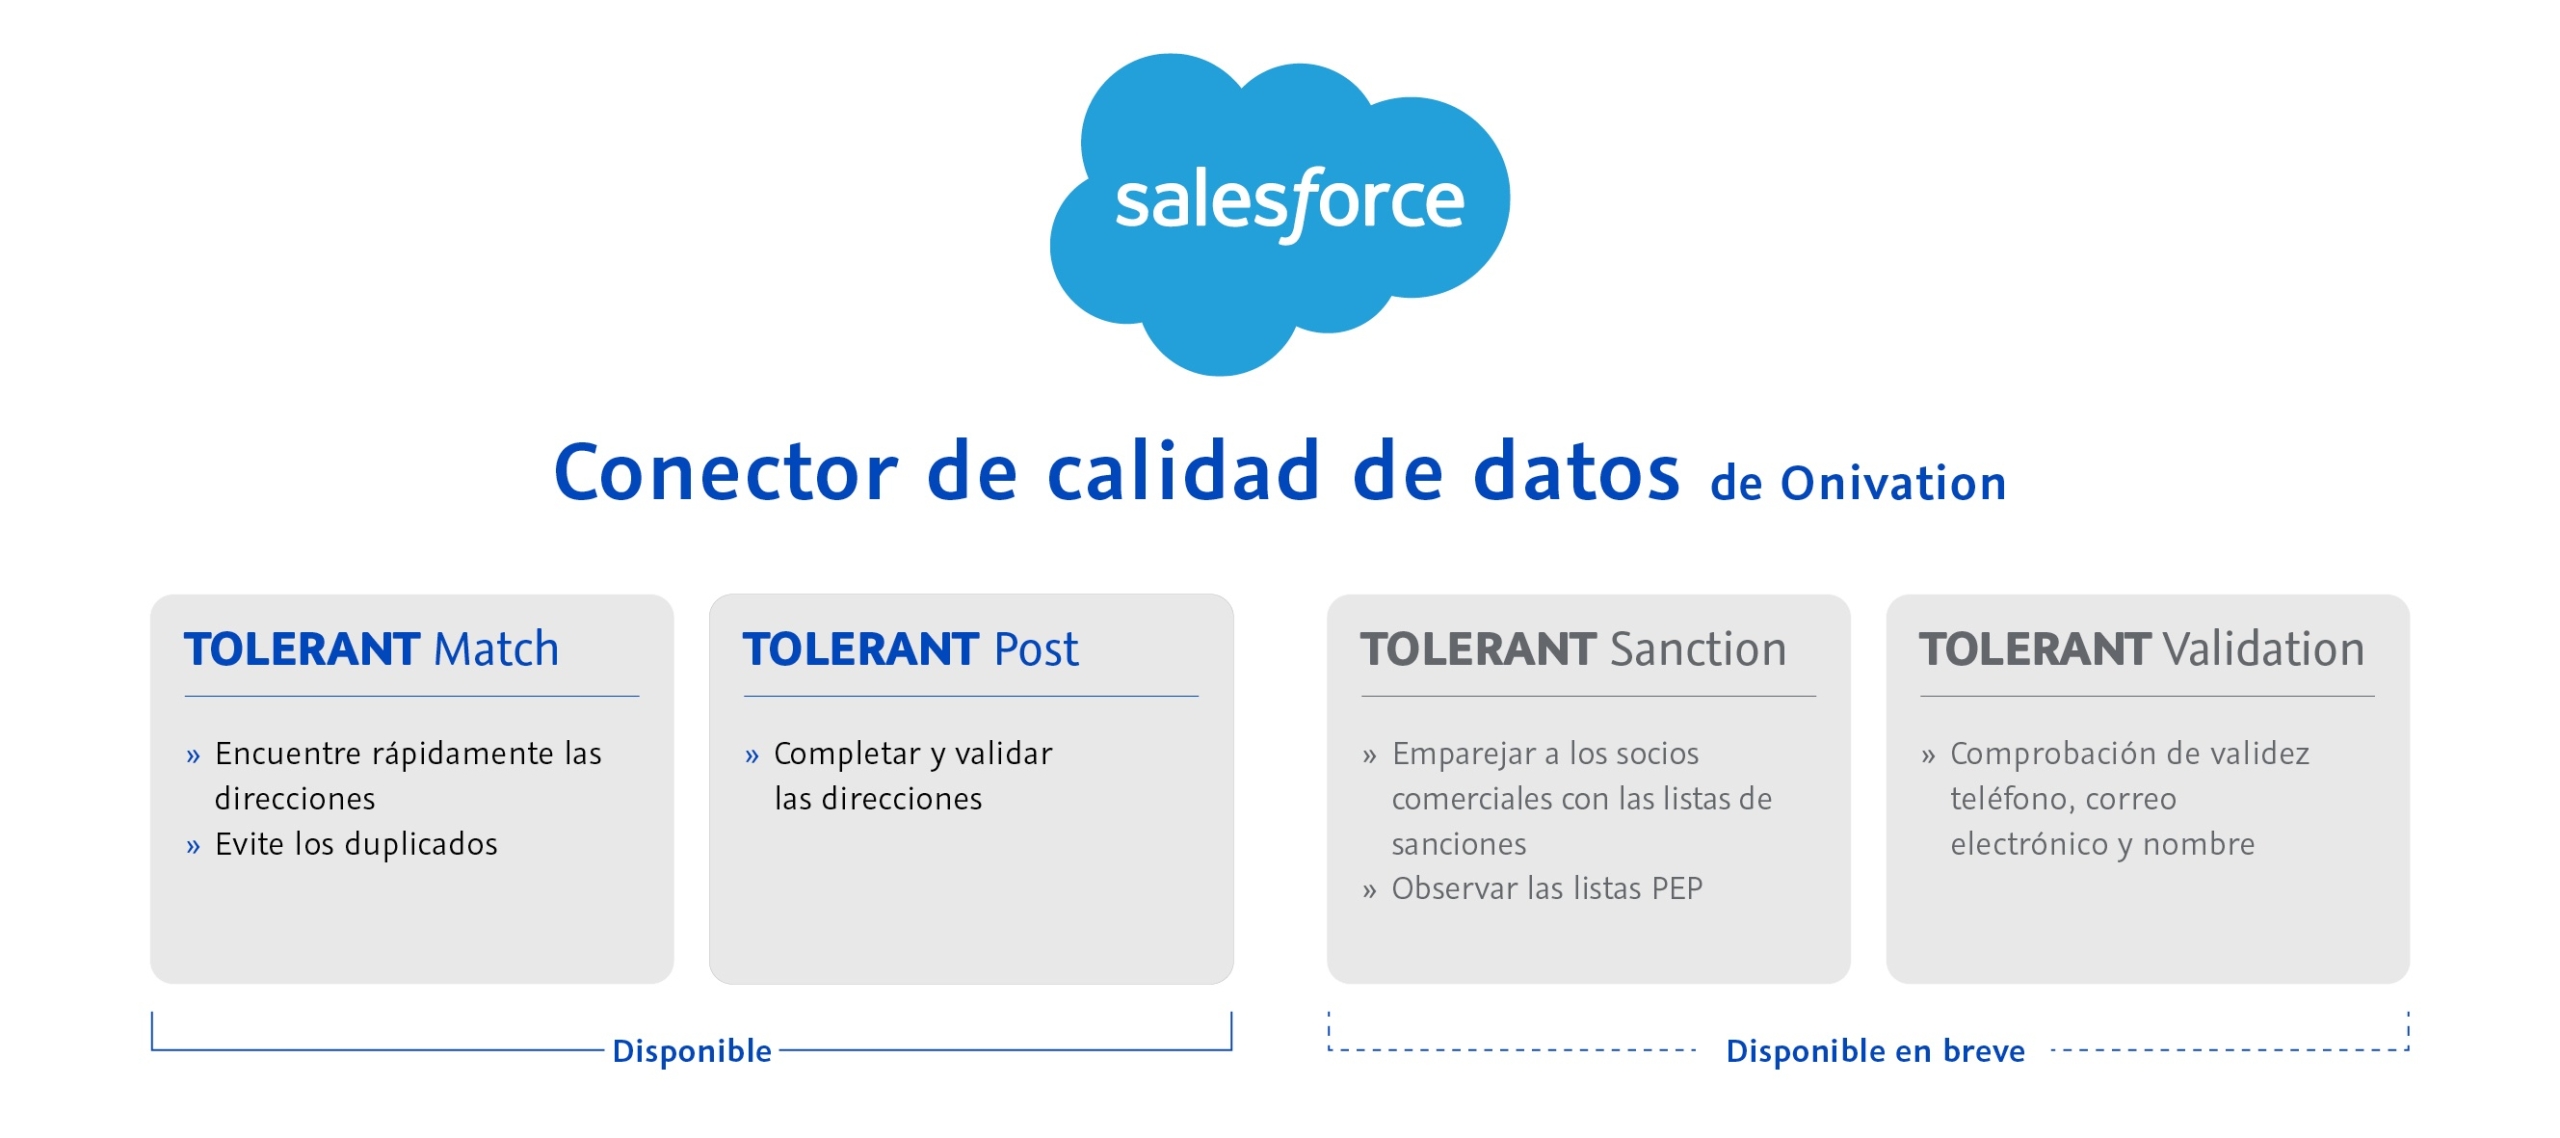 Salesforce - Conector de calidad de datos de Onivation